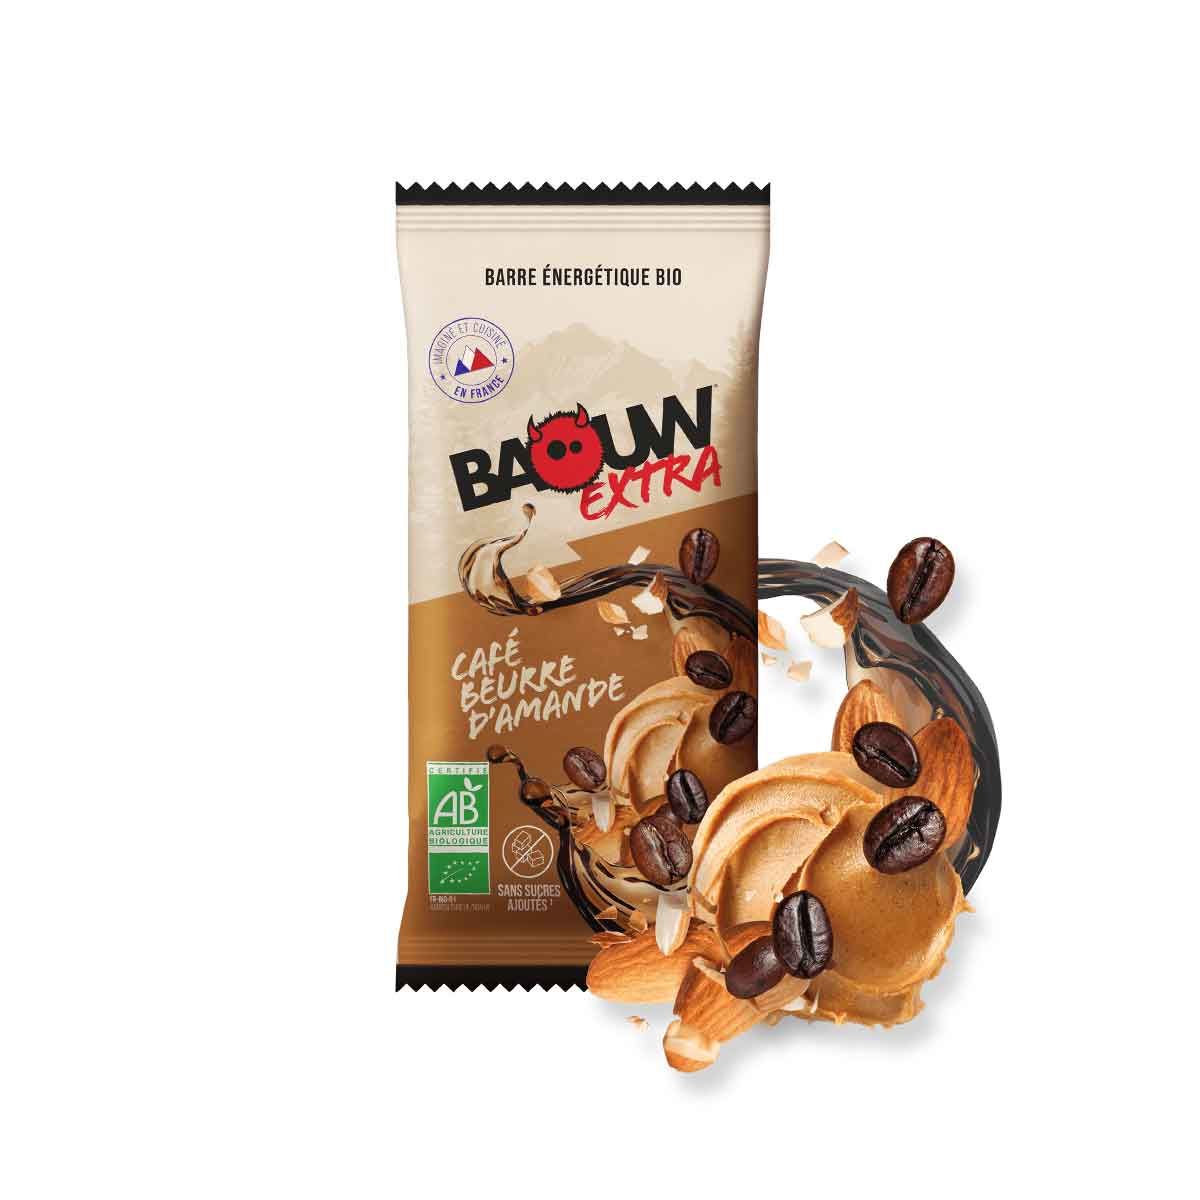 Barre énergétique Baouw Extra - Café, beurre d'amande